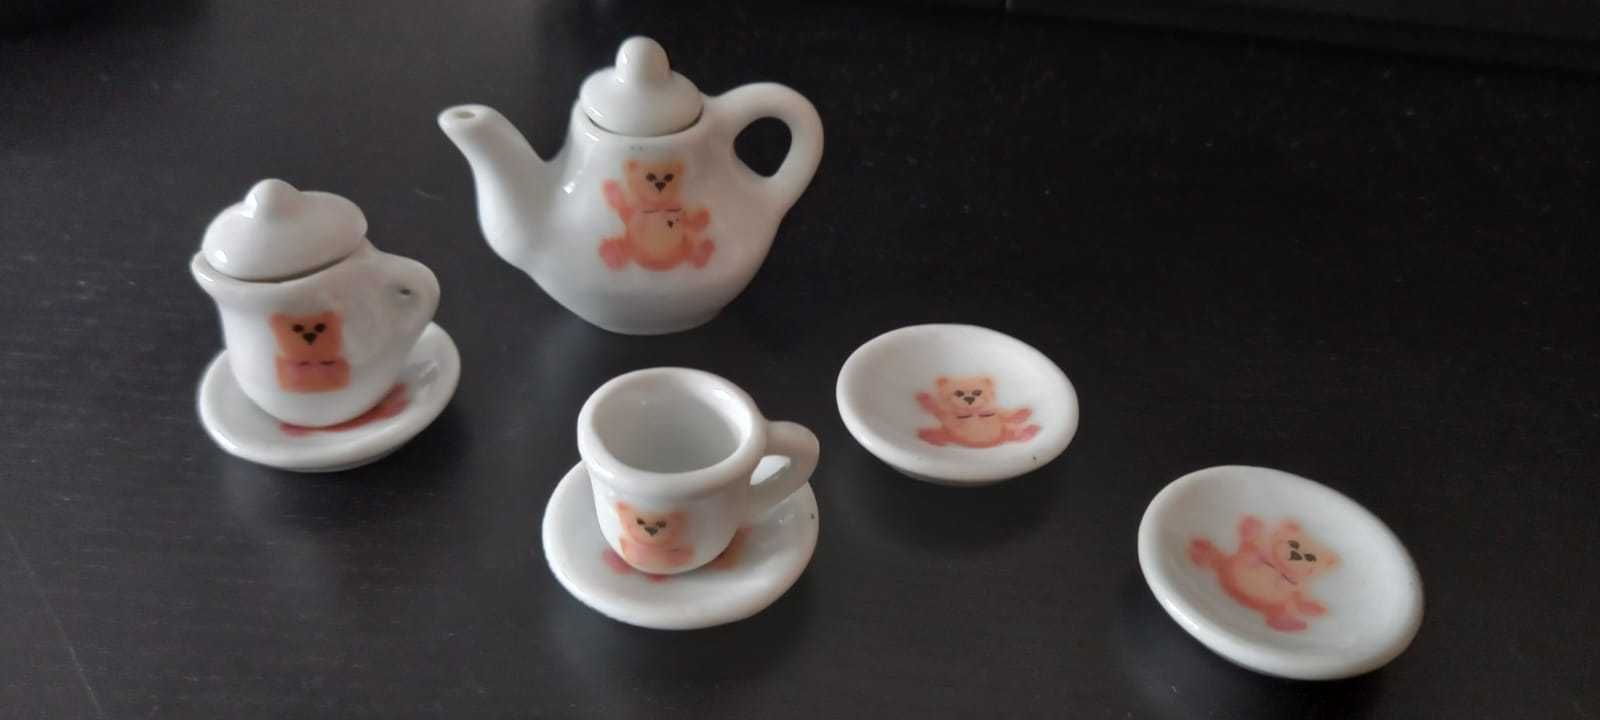 Serviço de chá de boneca em cerâmica